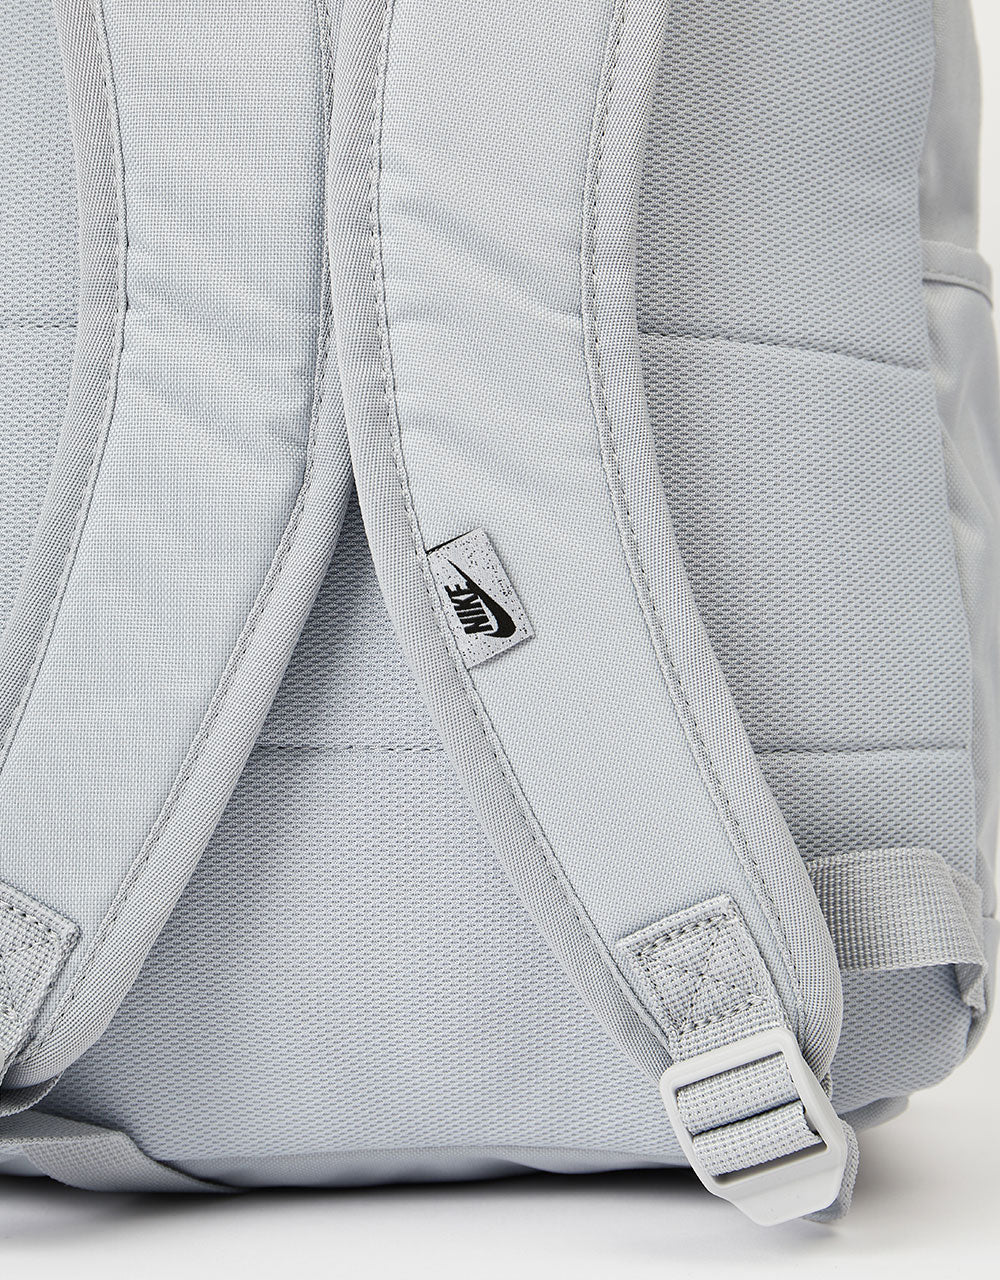 Nike SB Elemental Backpack - Wolf Grey/Wolf Grey/Black